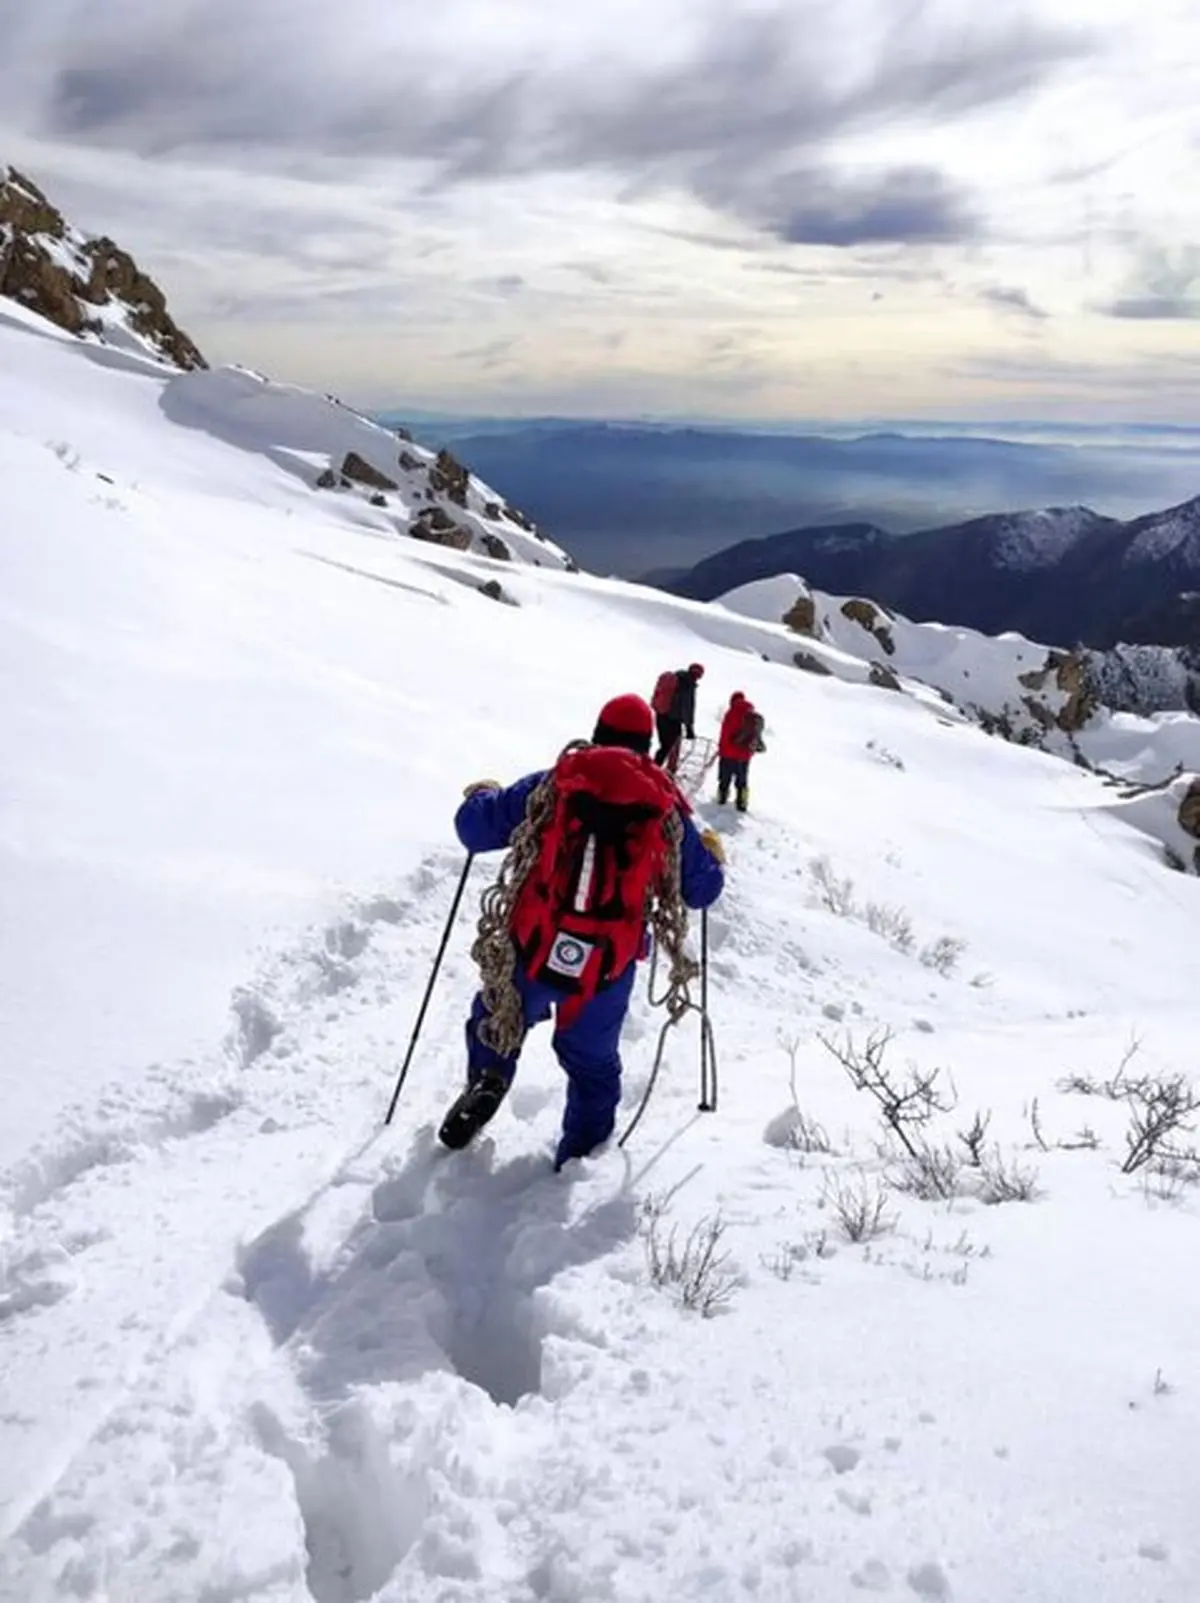 ۴ کوهنورد گرفتار در ارتفاعات "پراو" کرمانشاه نجات یافتند
